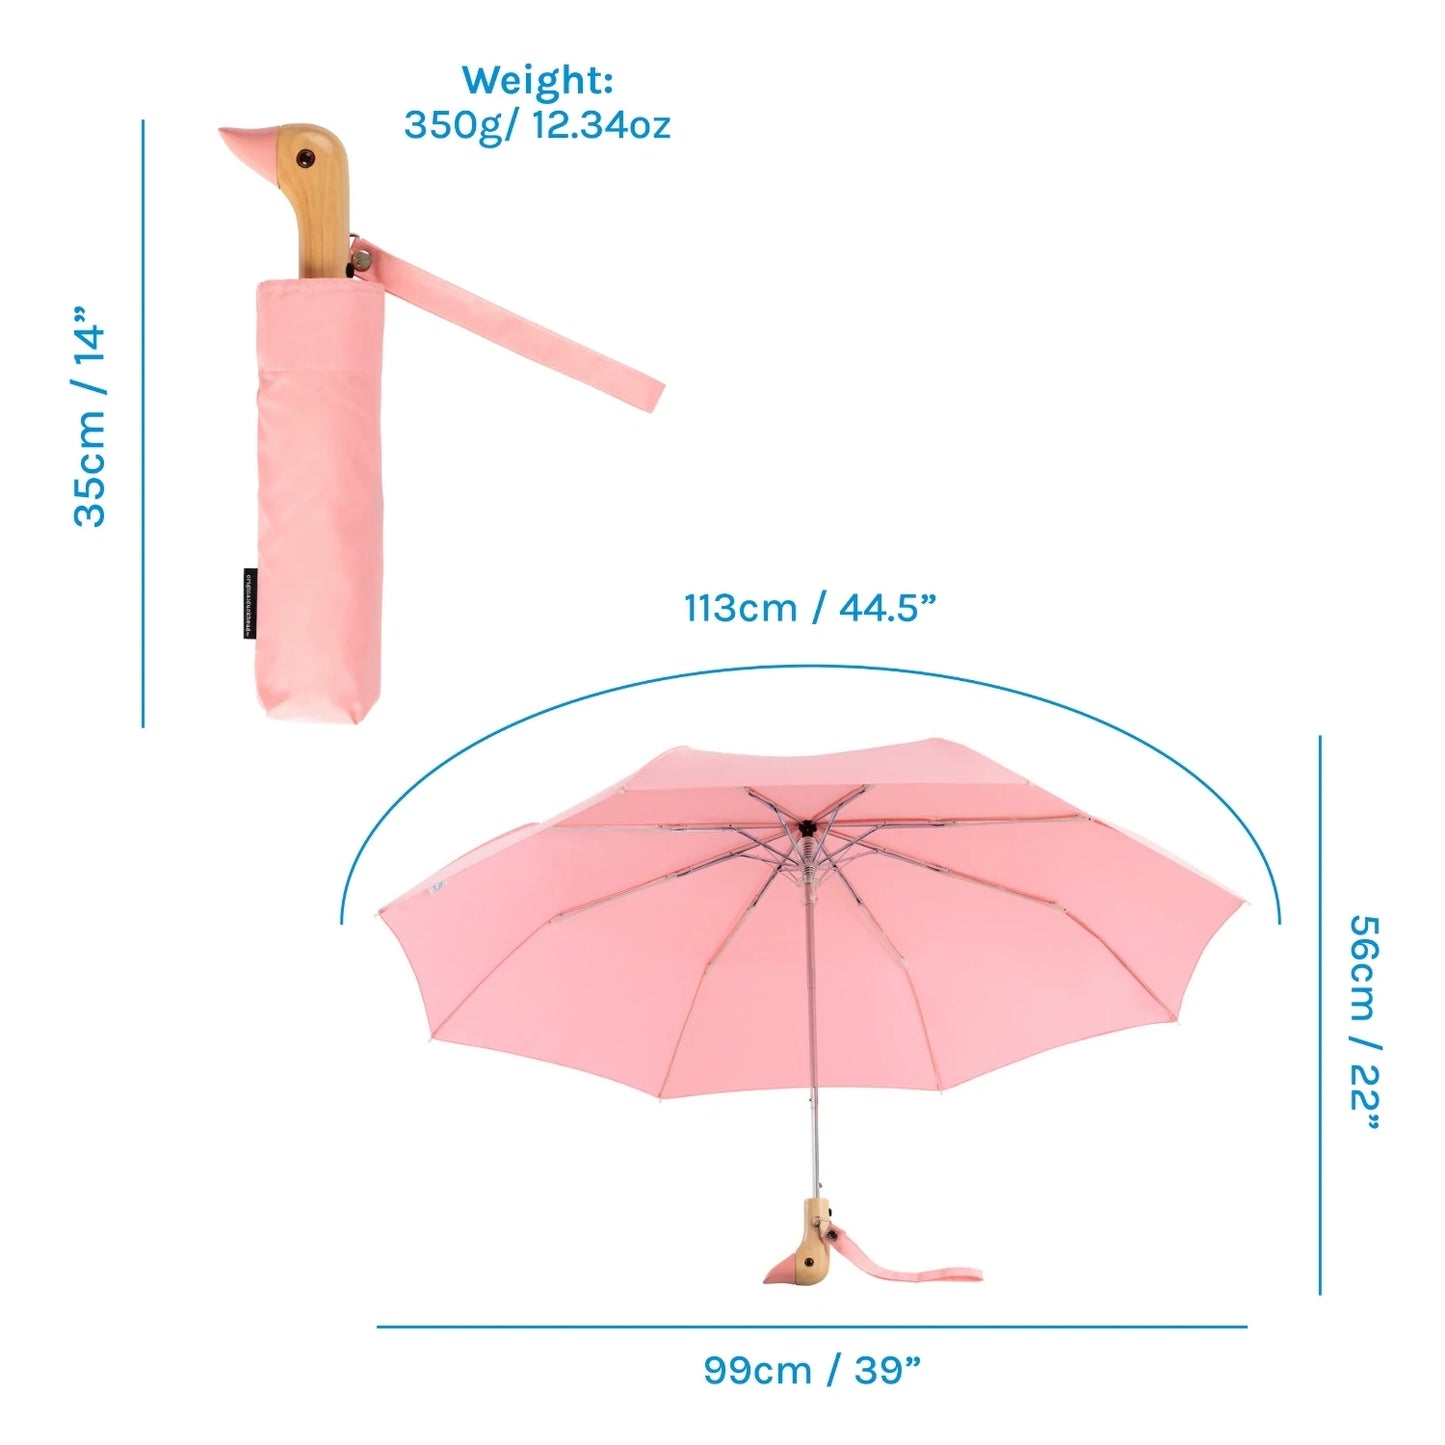 The Original Duckhead Pink Compact Umbrella